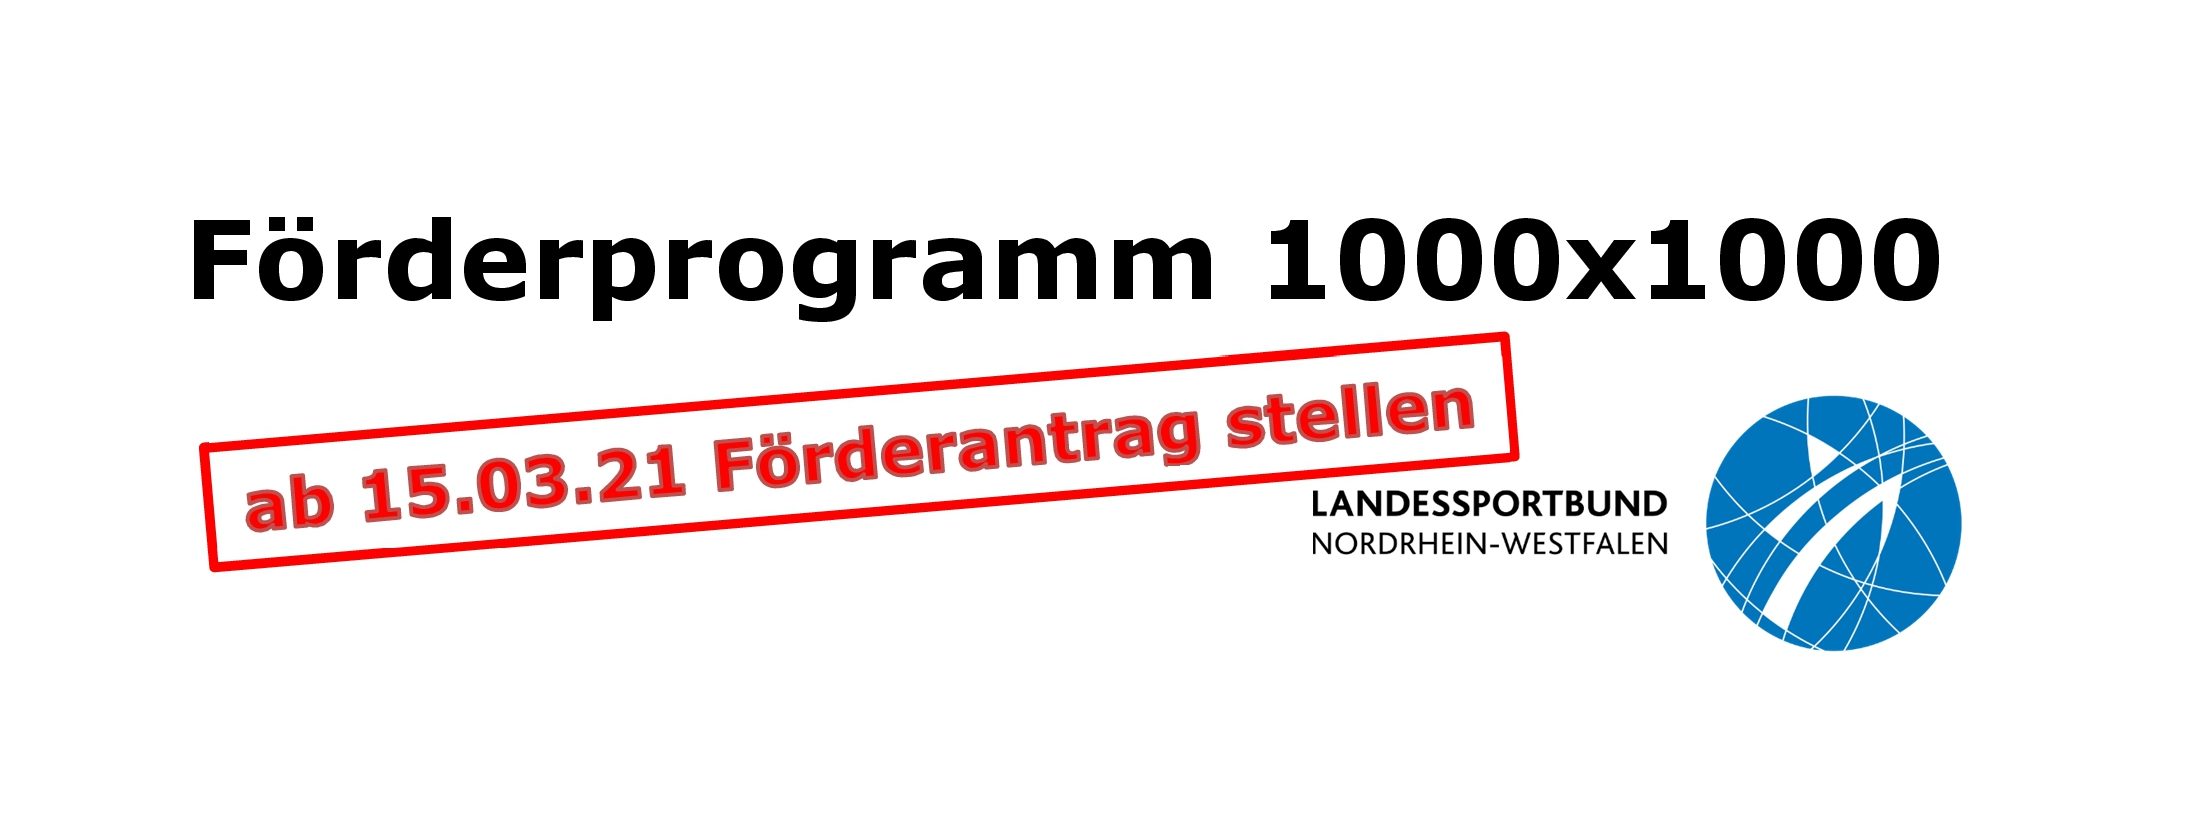 Landesprogramm 1000×1000 – Anträge können ab 15.03.21 gestellt werden